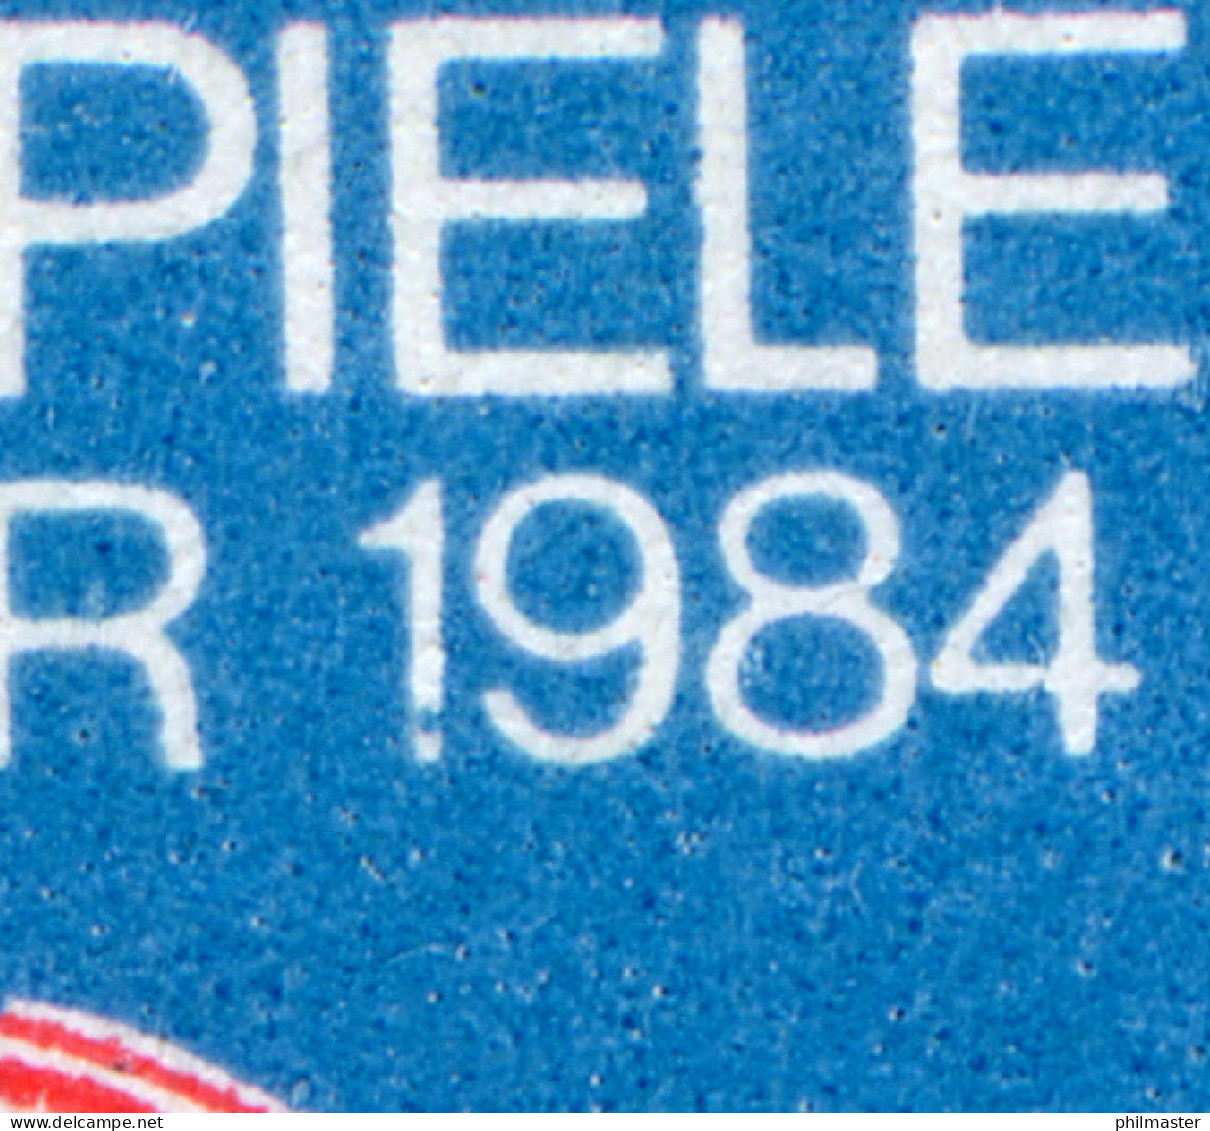 2880-2881 Gera 1984, Zusammendruck Mit PLF Im Zierfeld: Fleck Im Fuß Der 1, ** - Errors & Oddities